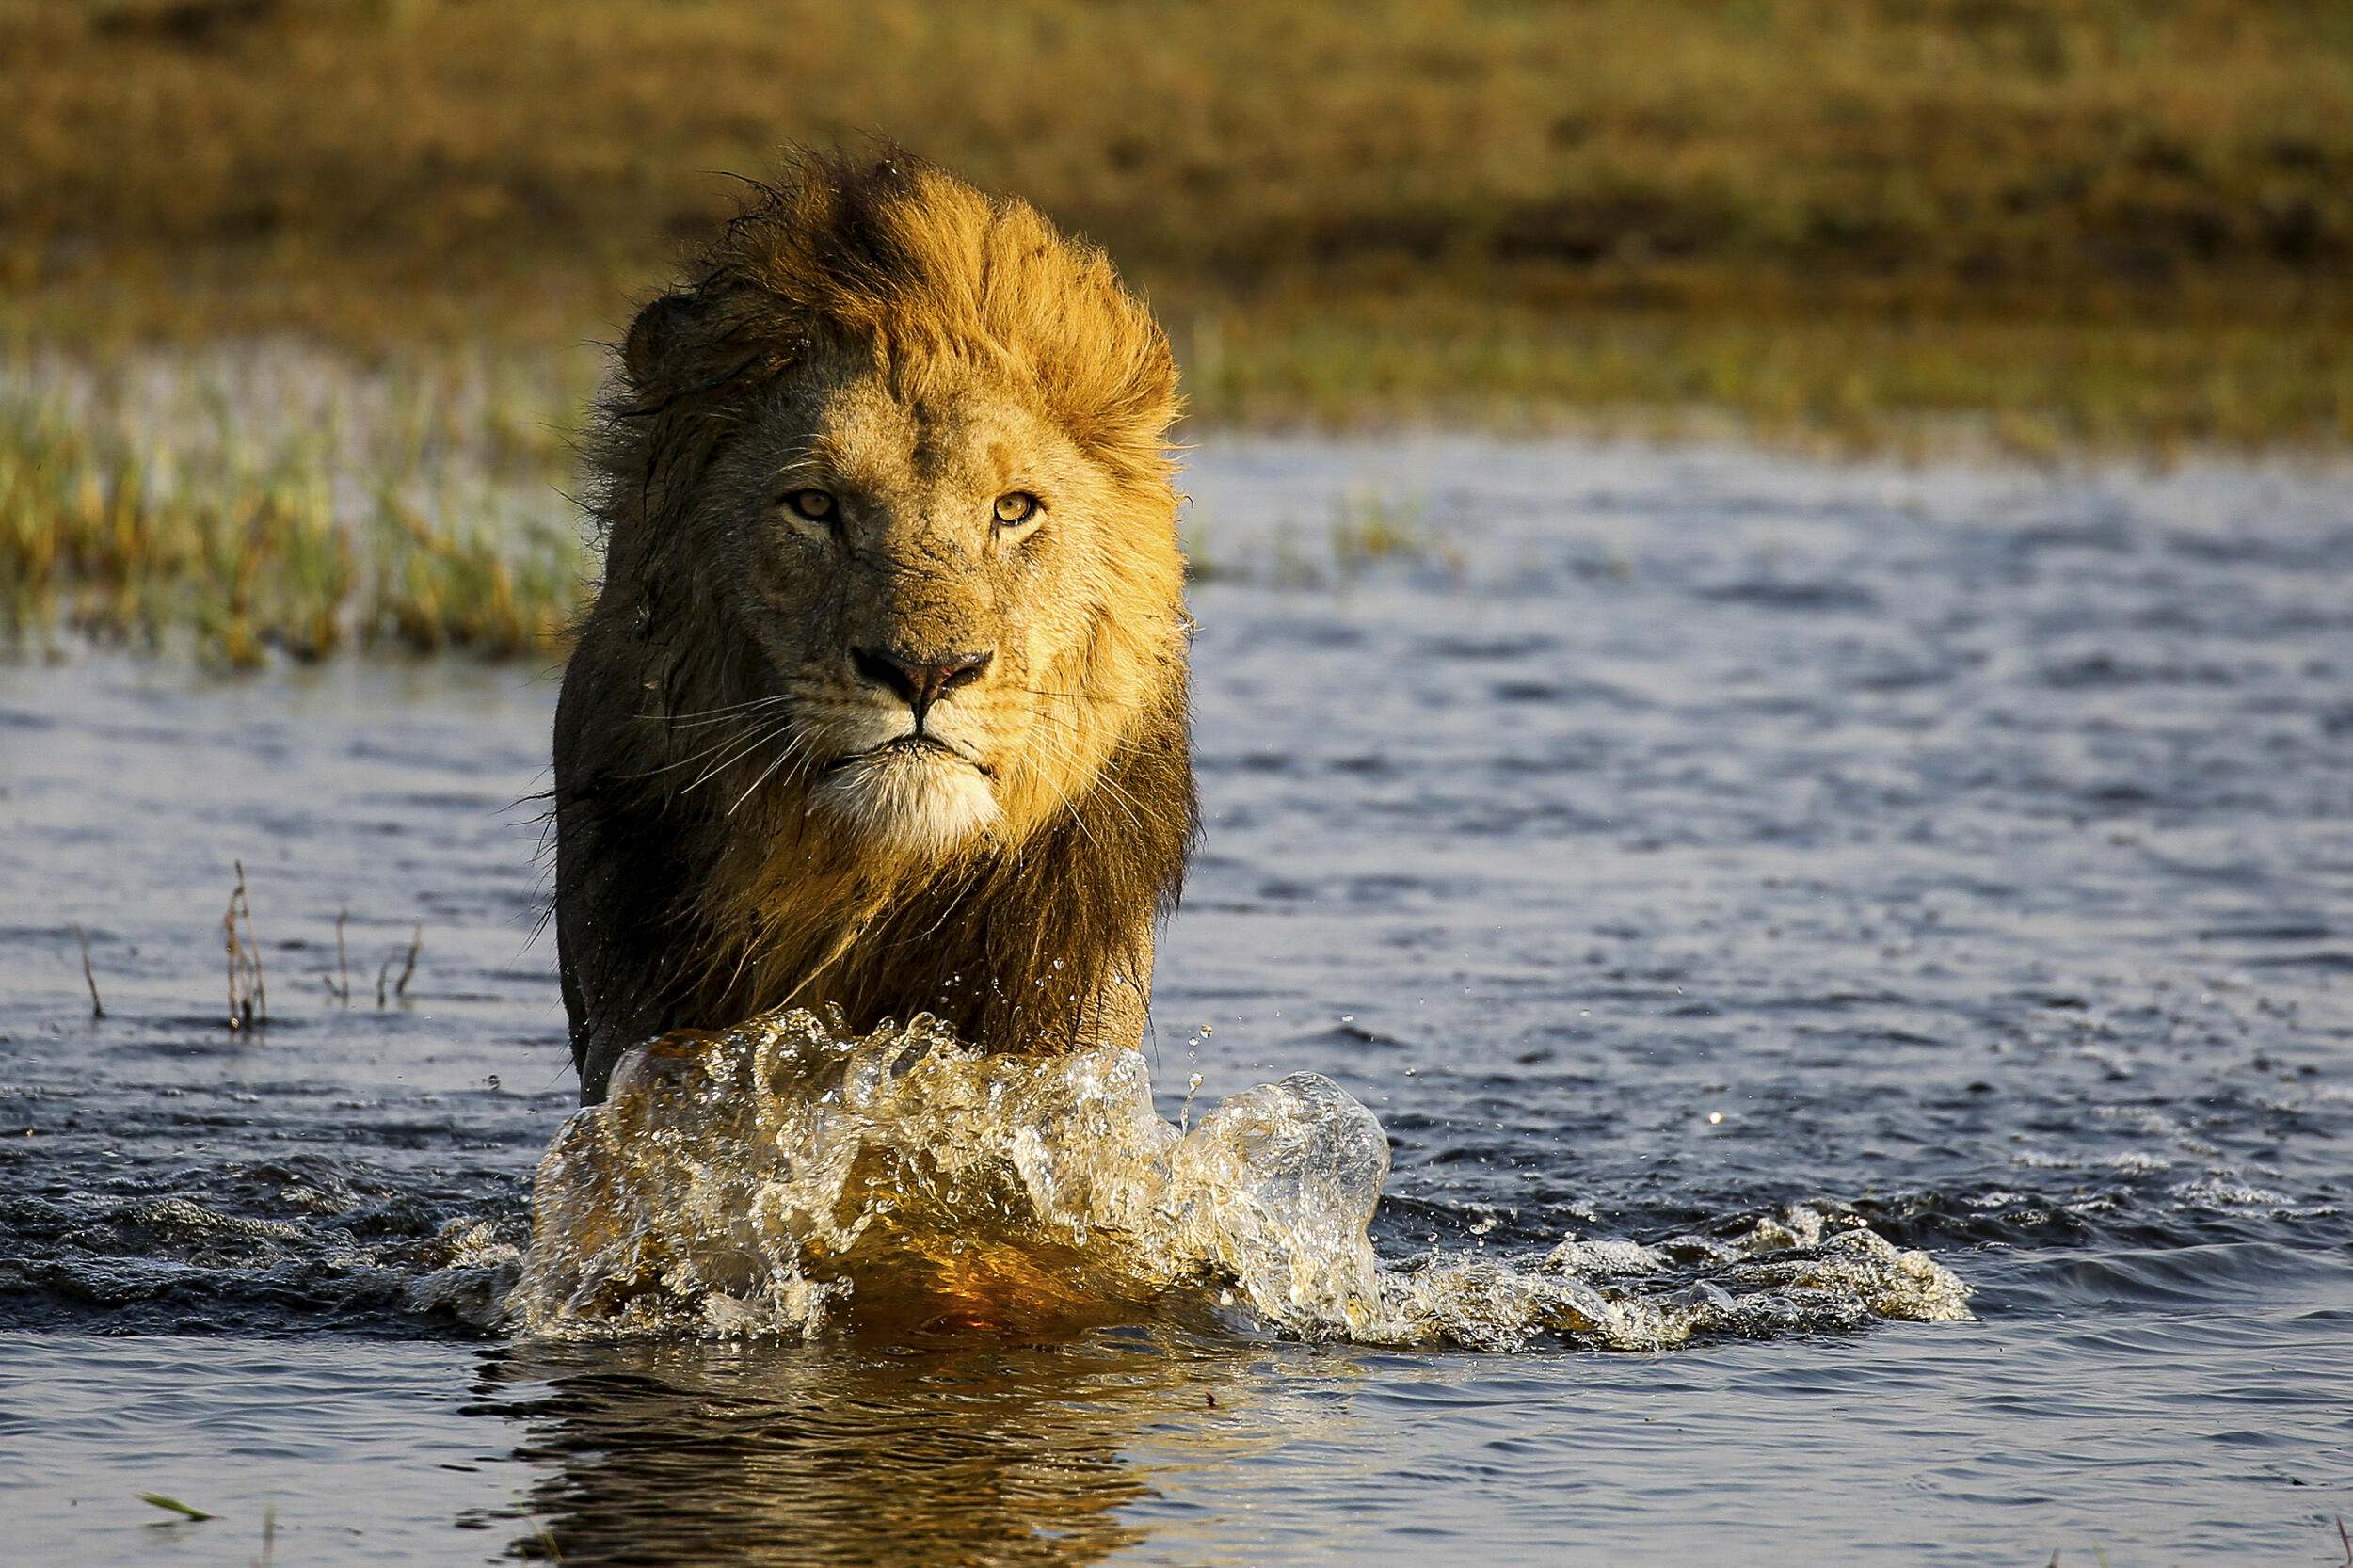 Male lion runs through shallow wetland.